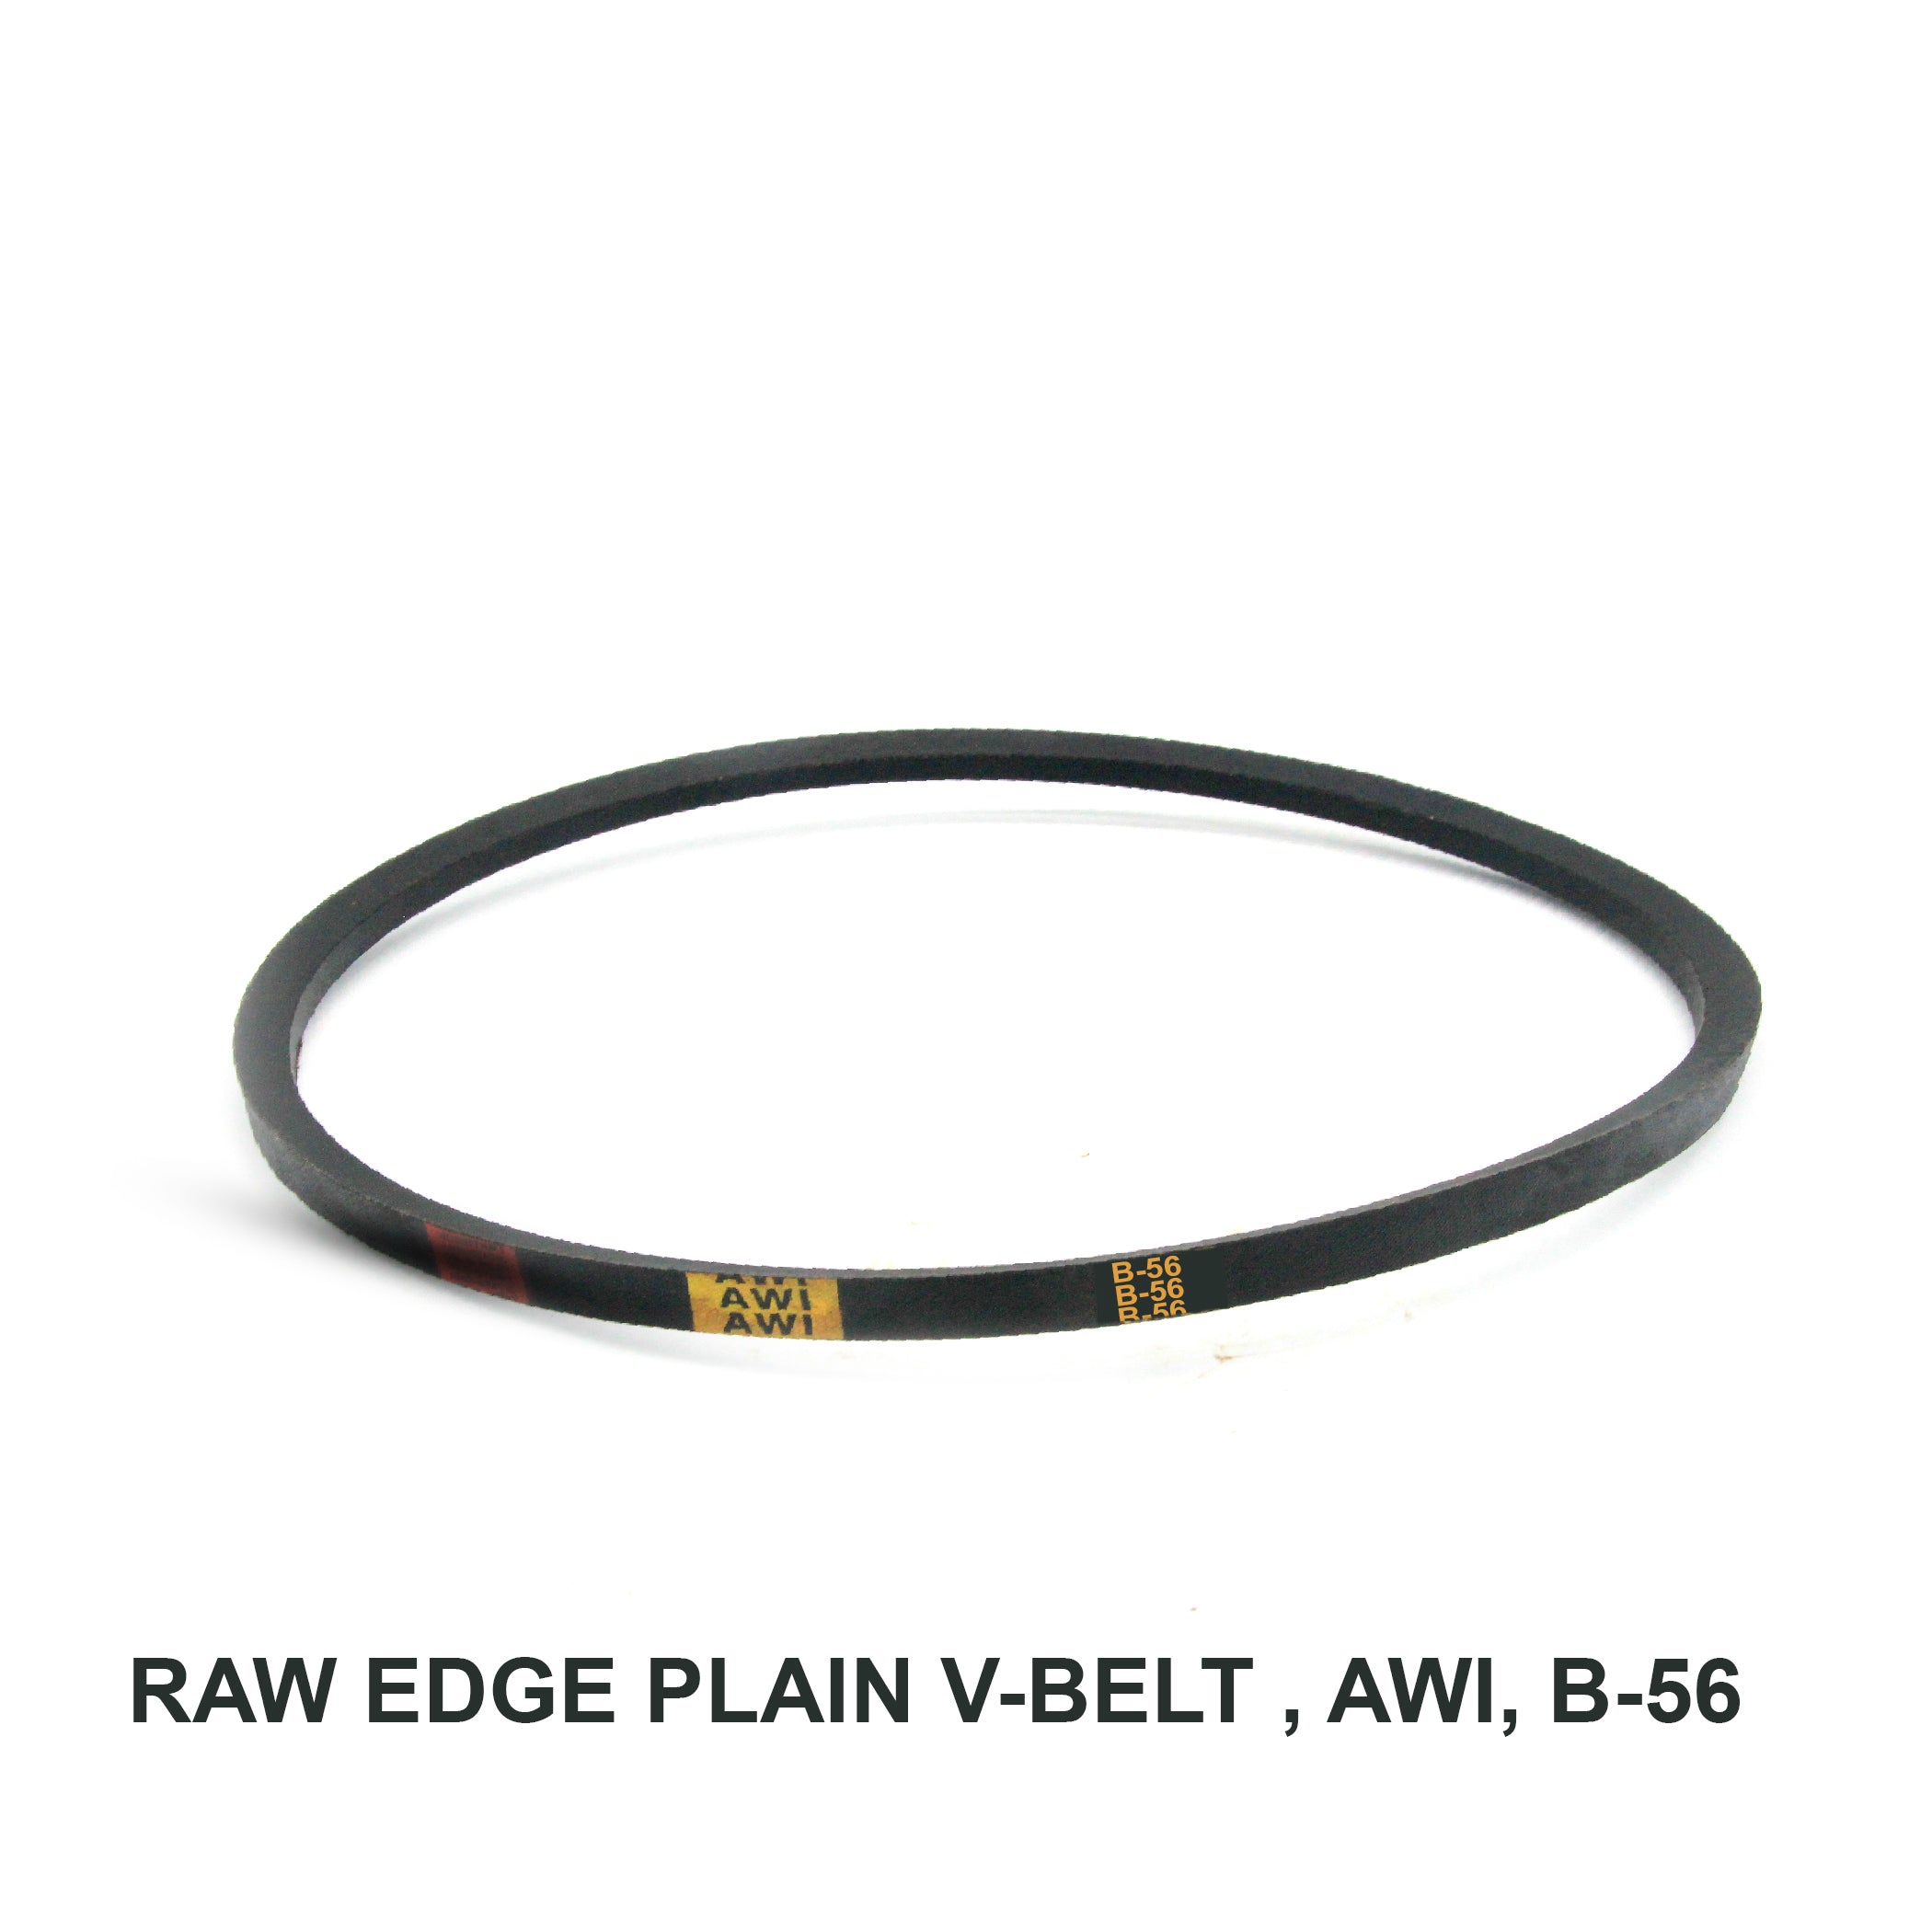 Raw Edge Plain V-belt (REMF), AWI, B-56